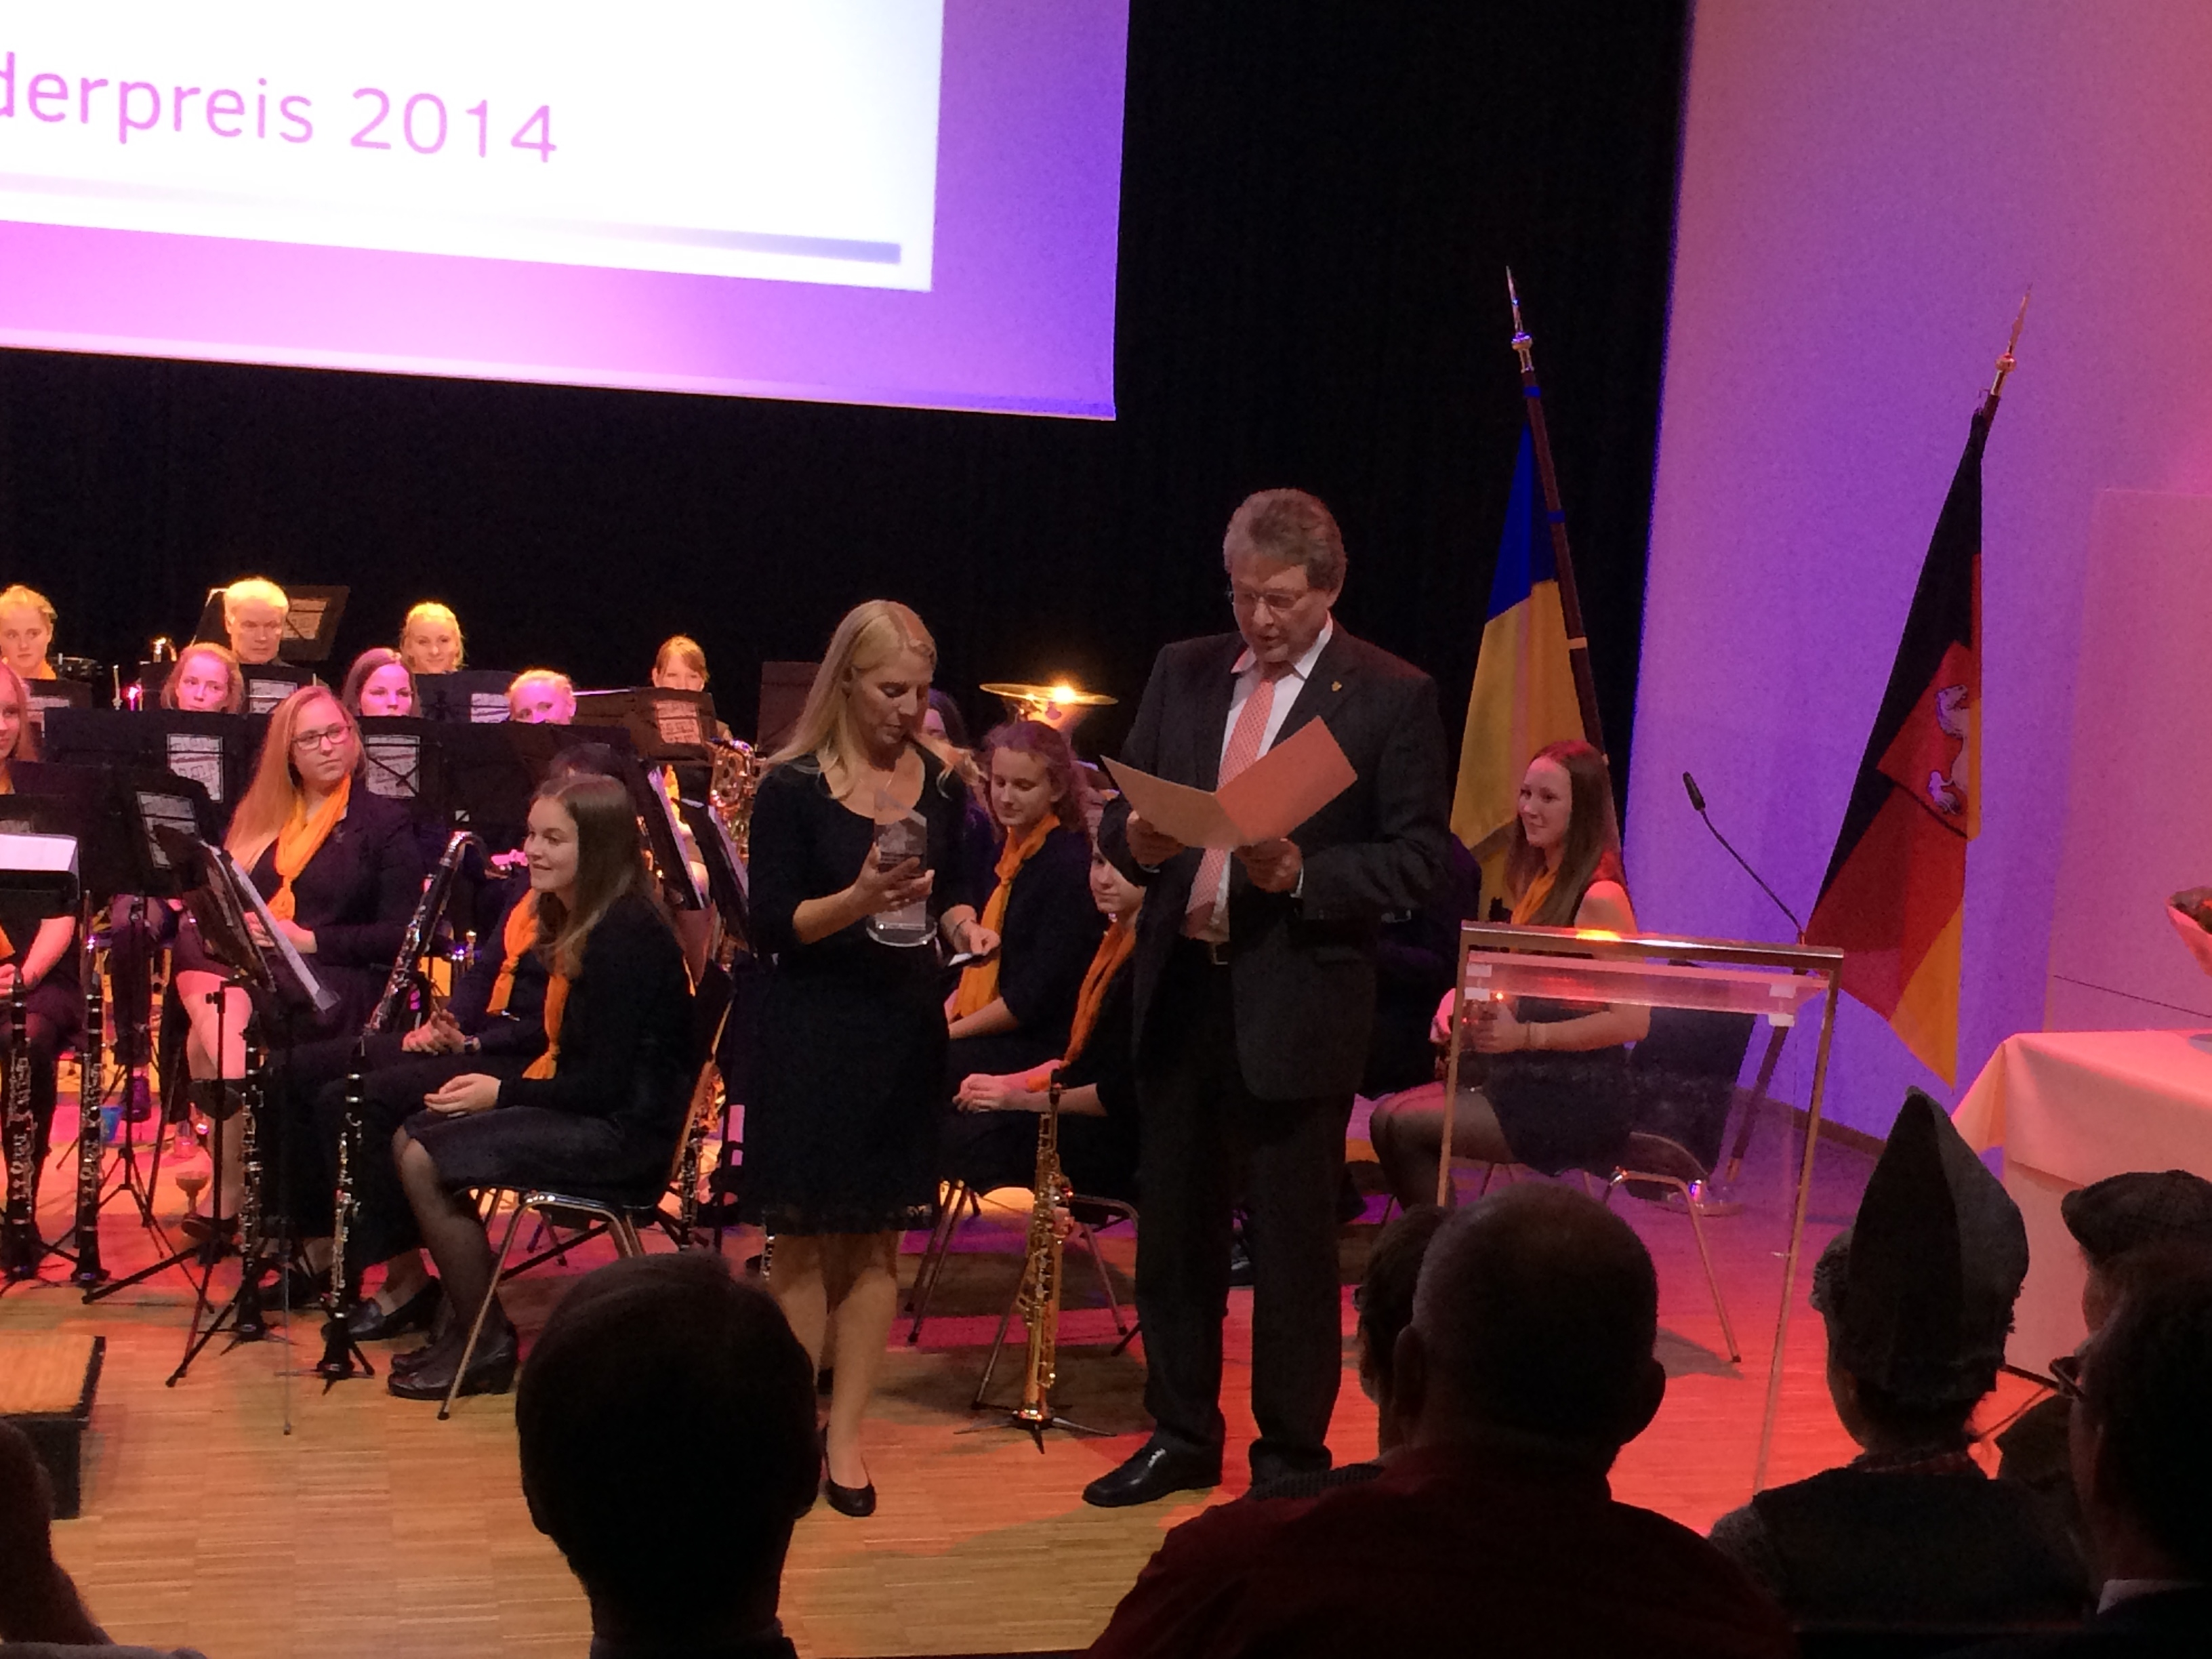 Preisverleihung am 10.10.2014 in der Musikschule Lüneburg durch Landrat Nahrstedt